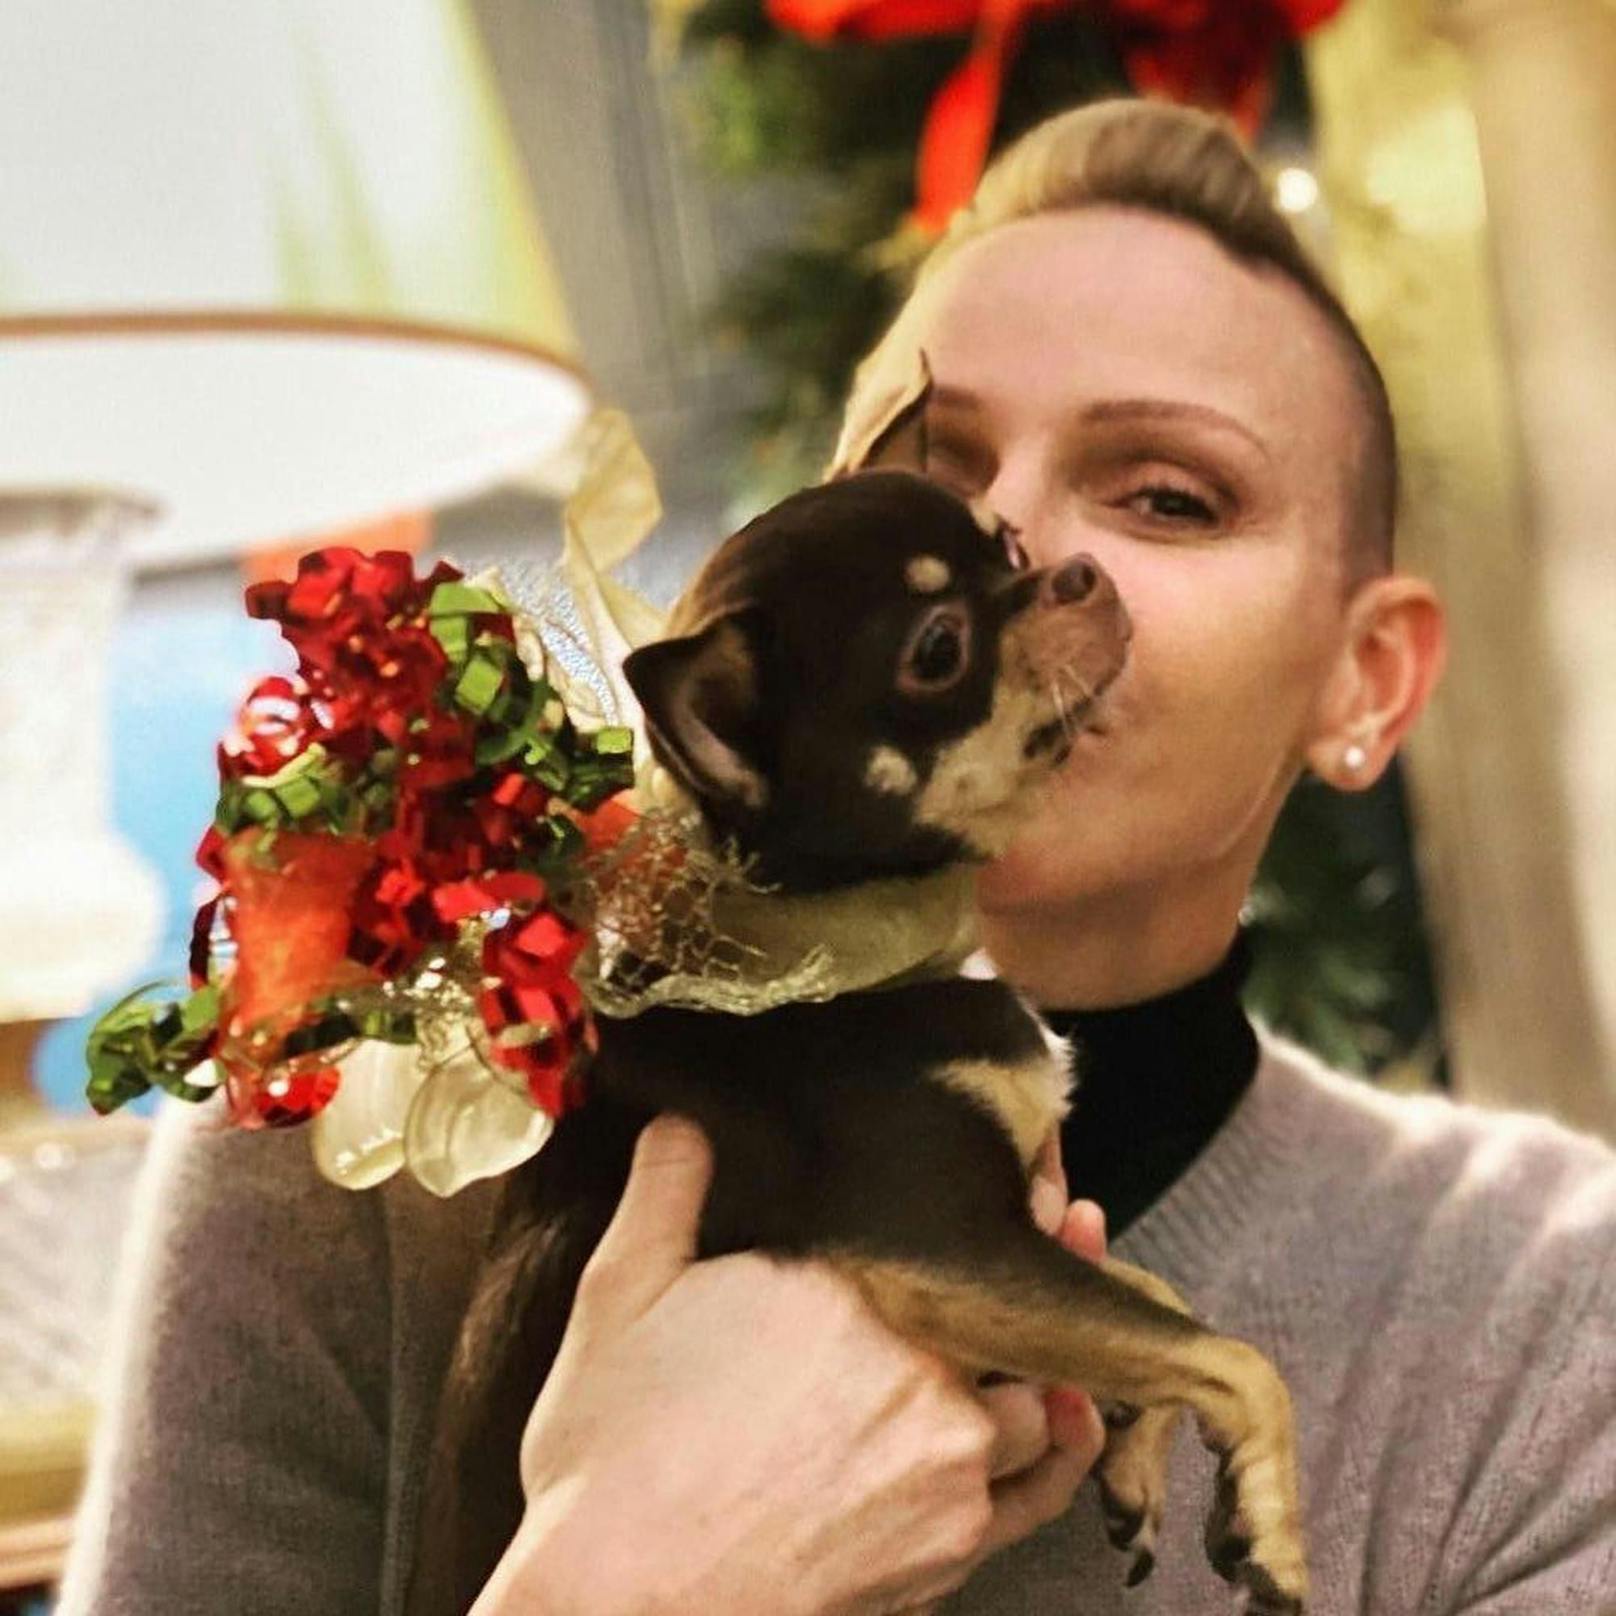 Kurz vor ihrer Heimreise teilte Charlène eine traurige Nachricht auf Instagram mit. Ihr Hund Monte wurde überfahren. "Ich werde dich so sehr vermissen, Ruhe in Frieden", schrieb sie zum geposteten Foto von ihr und ihrem Chihuahua.